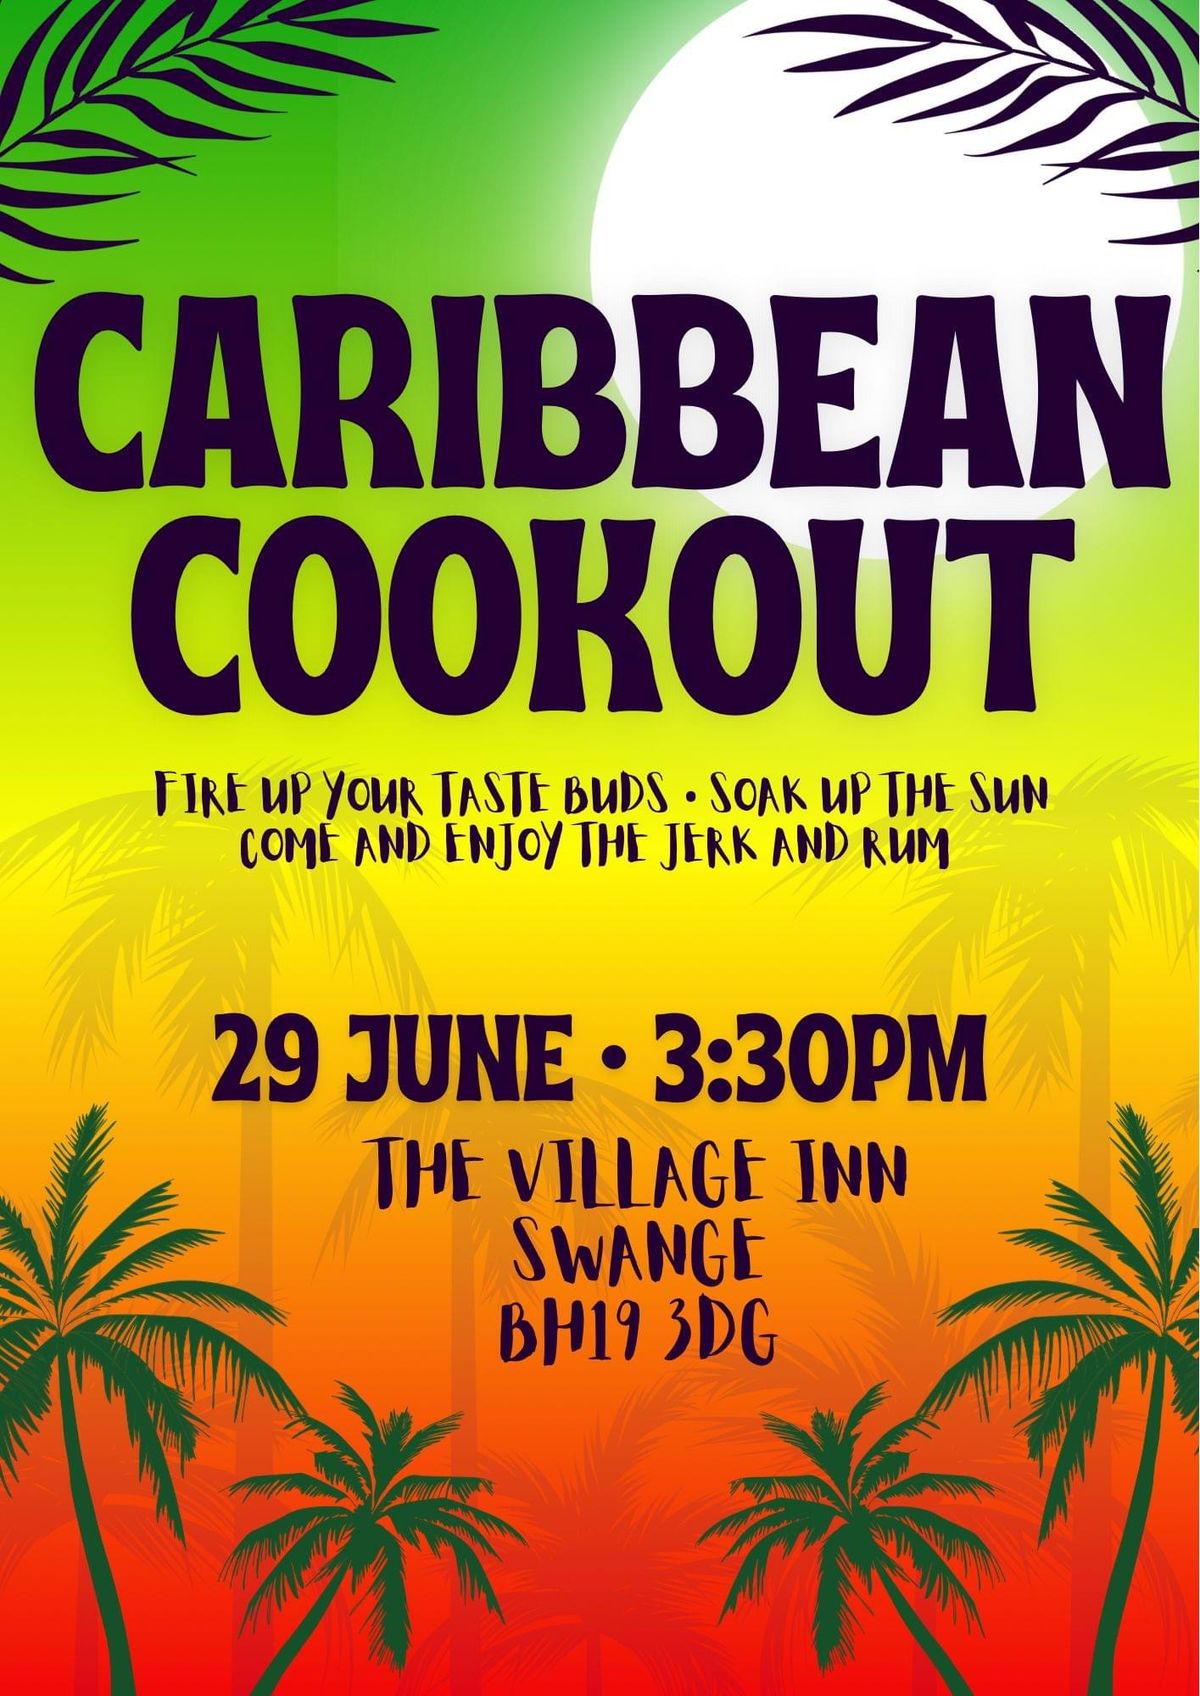 \ud83c\udf34 Caribbean Cook Out at The Village Inn \ud83c\udf34 